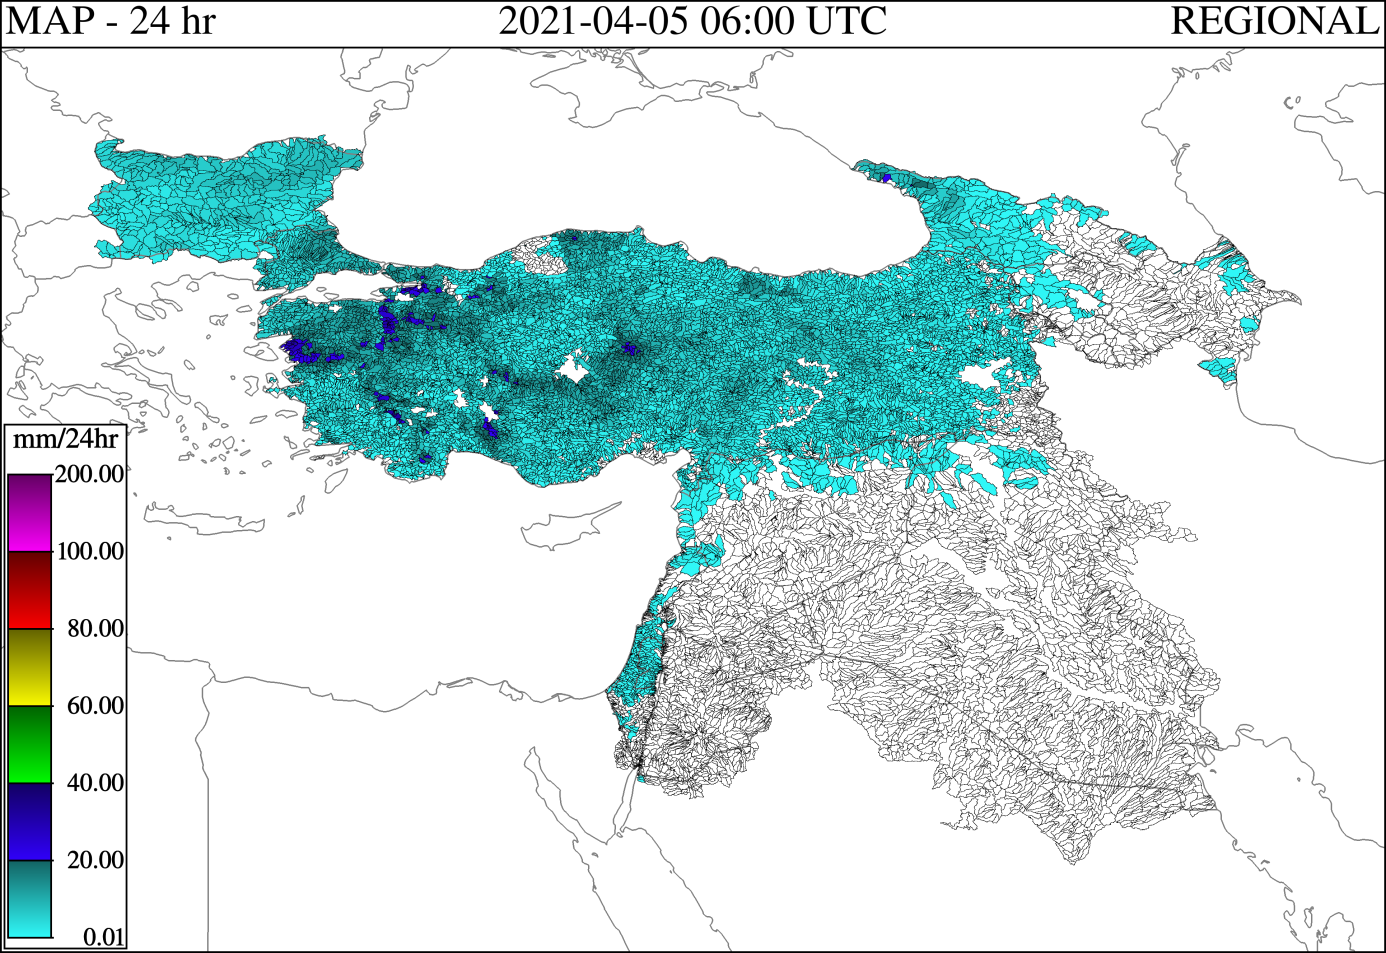 Birleştirilmiş Ortalama Alansal Yağış Ürünü (MAP)